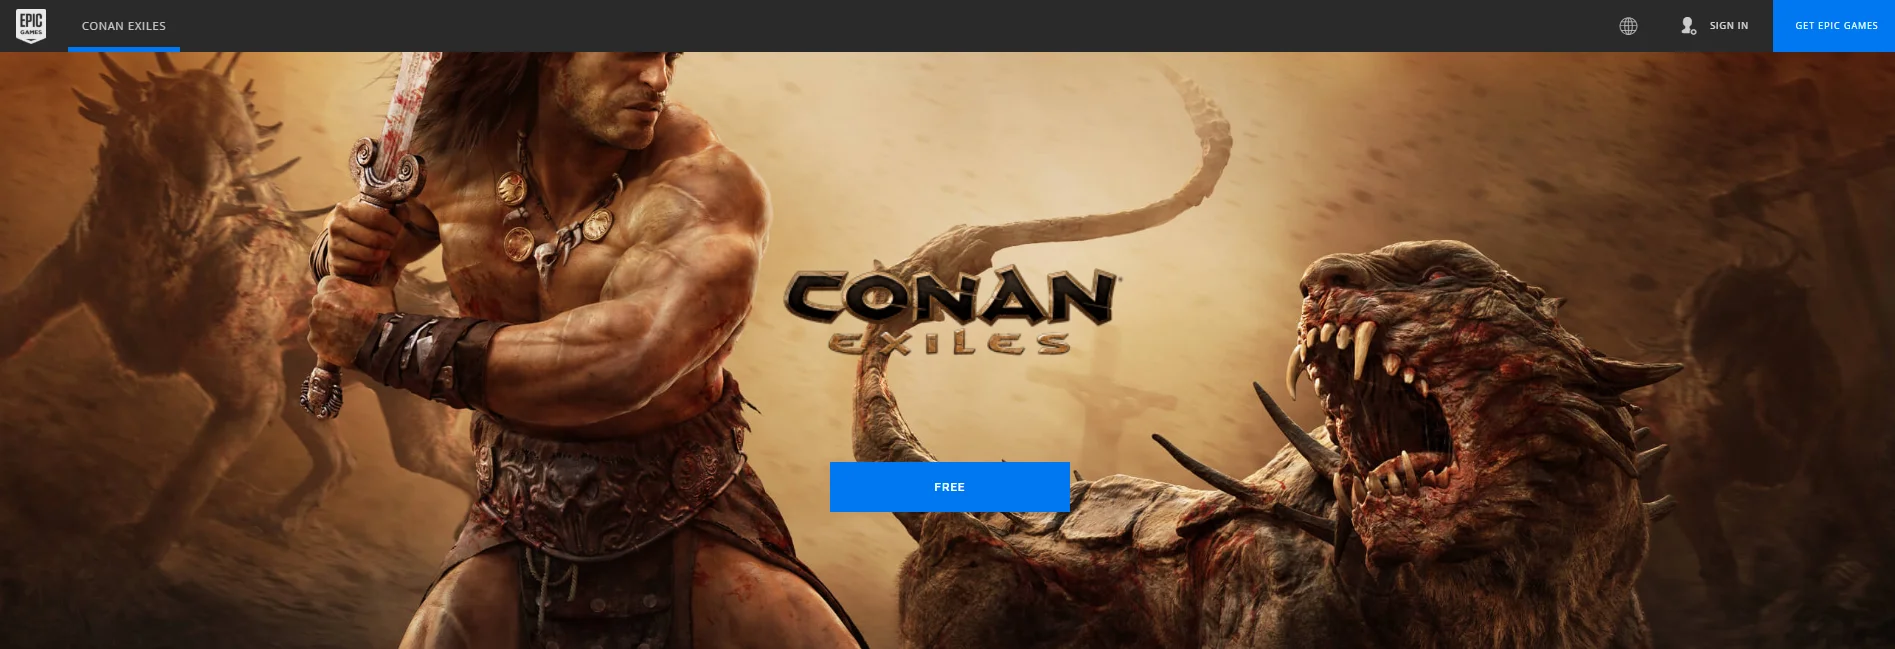 Conan Exiles можно бесплатно забрать в магазине Epic Games (Обновлено: нет, это ошибка) - фото 2